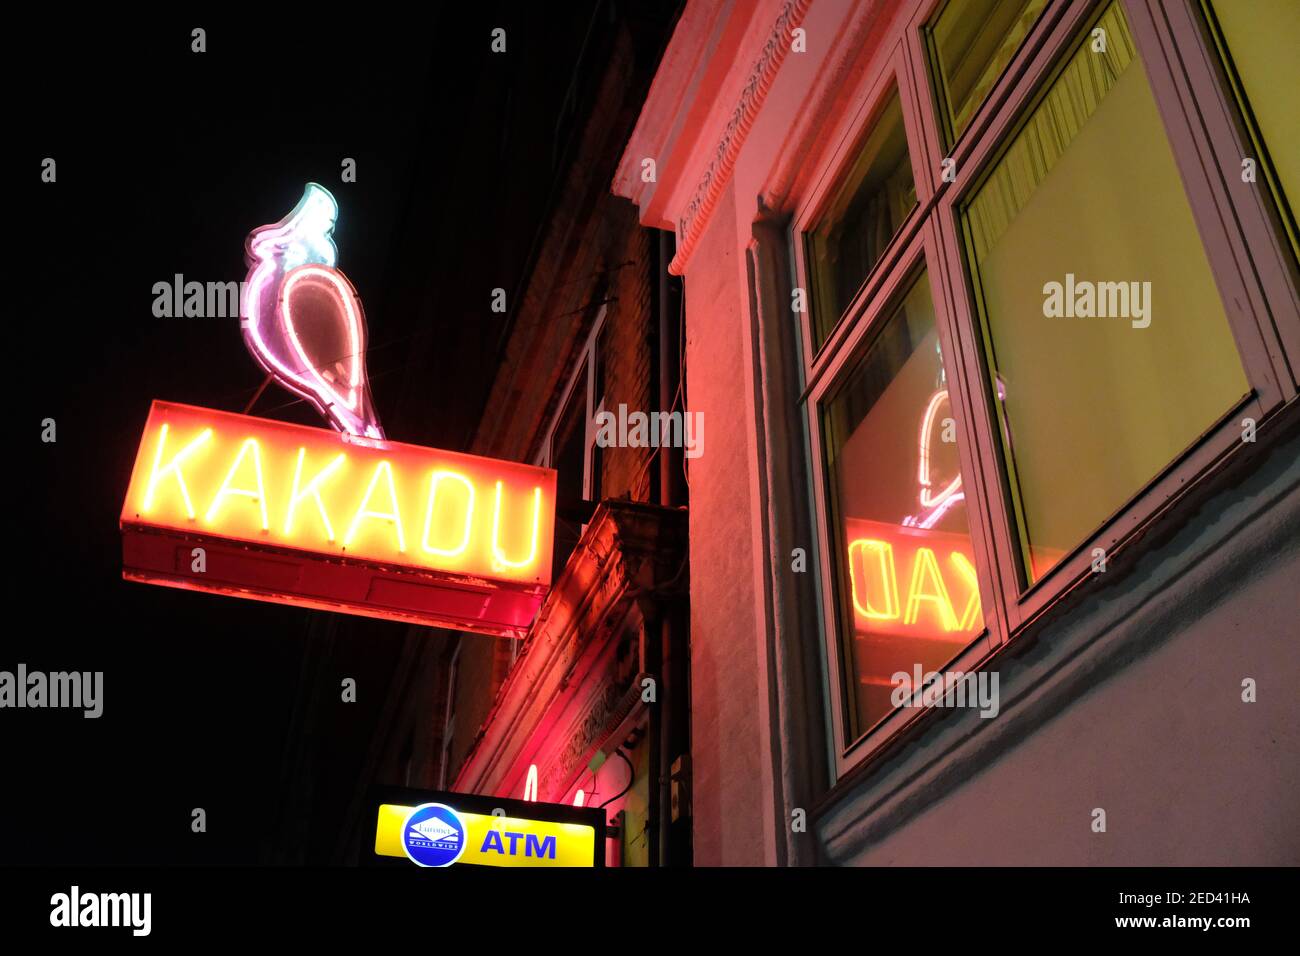 COPENHAGUE, DANEMARK - 8 JANVIER 2019 : un panneau lumineux au néon pour le club de strip exclusif de Kakadu. Banque D'Images